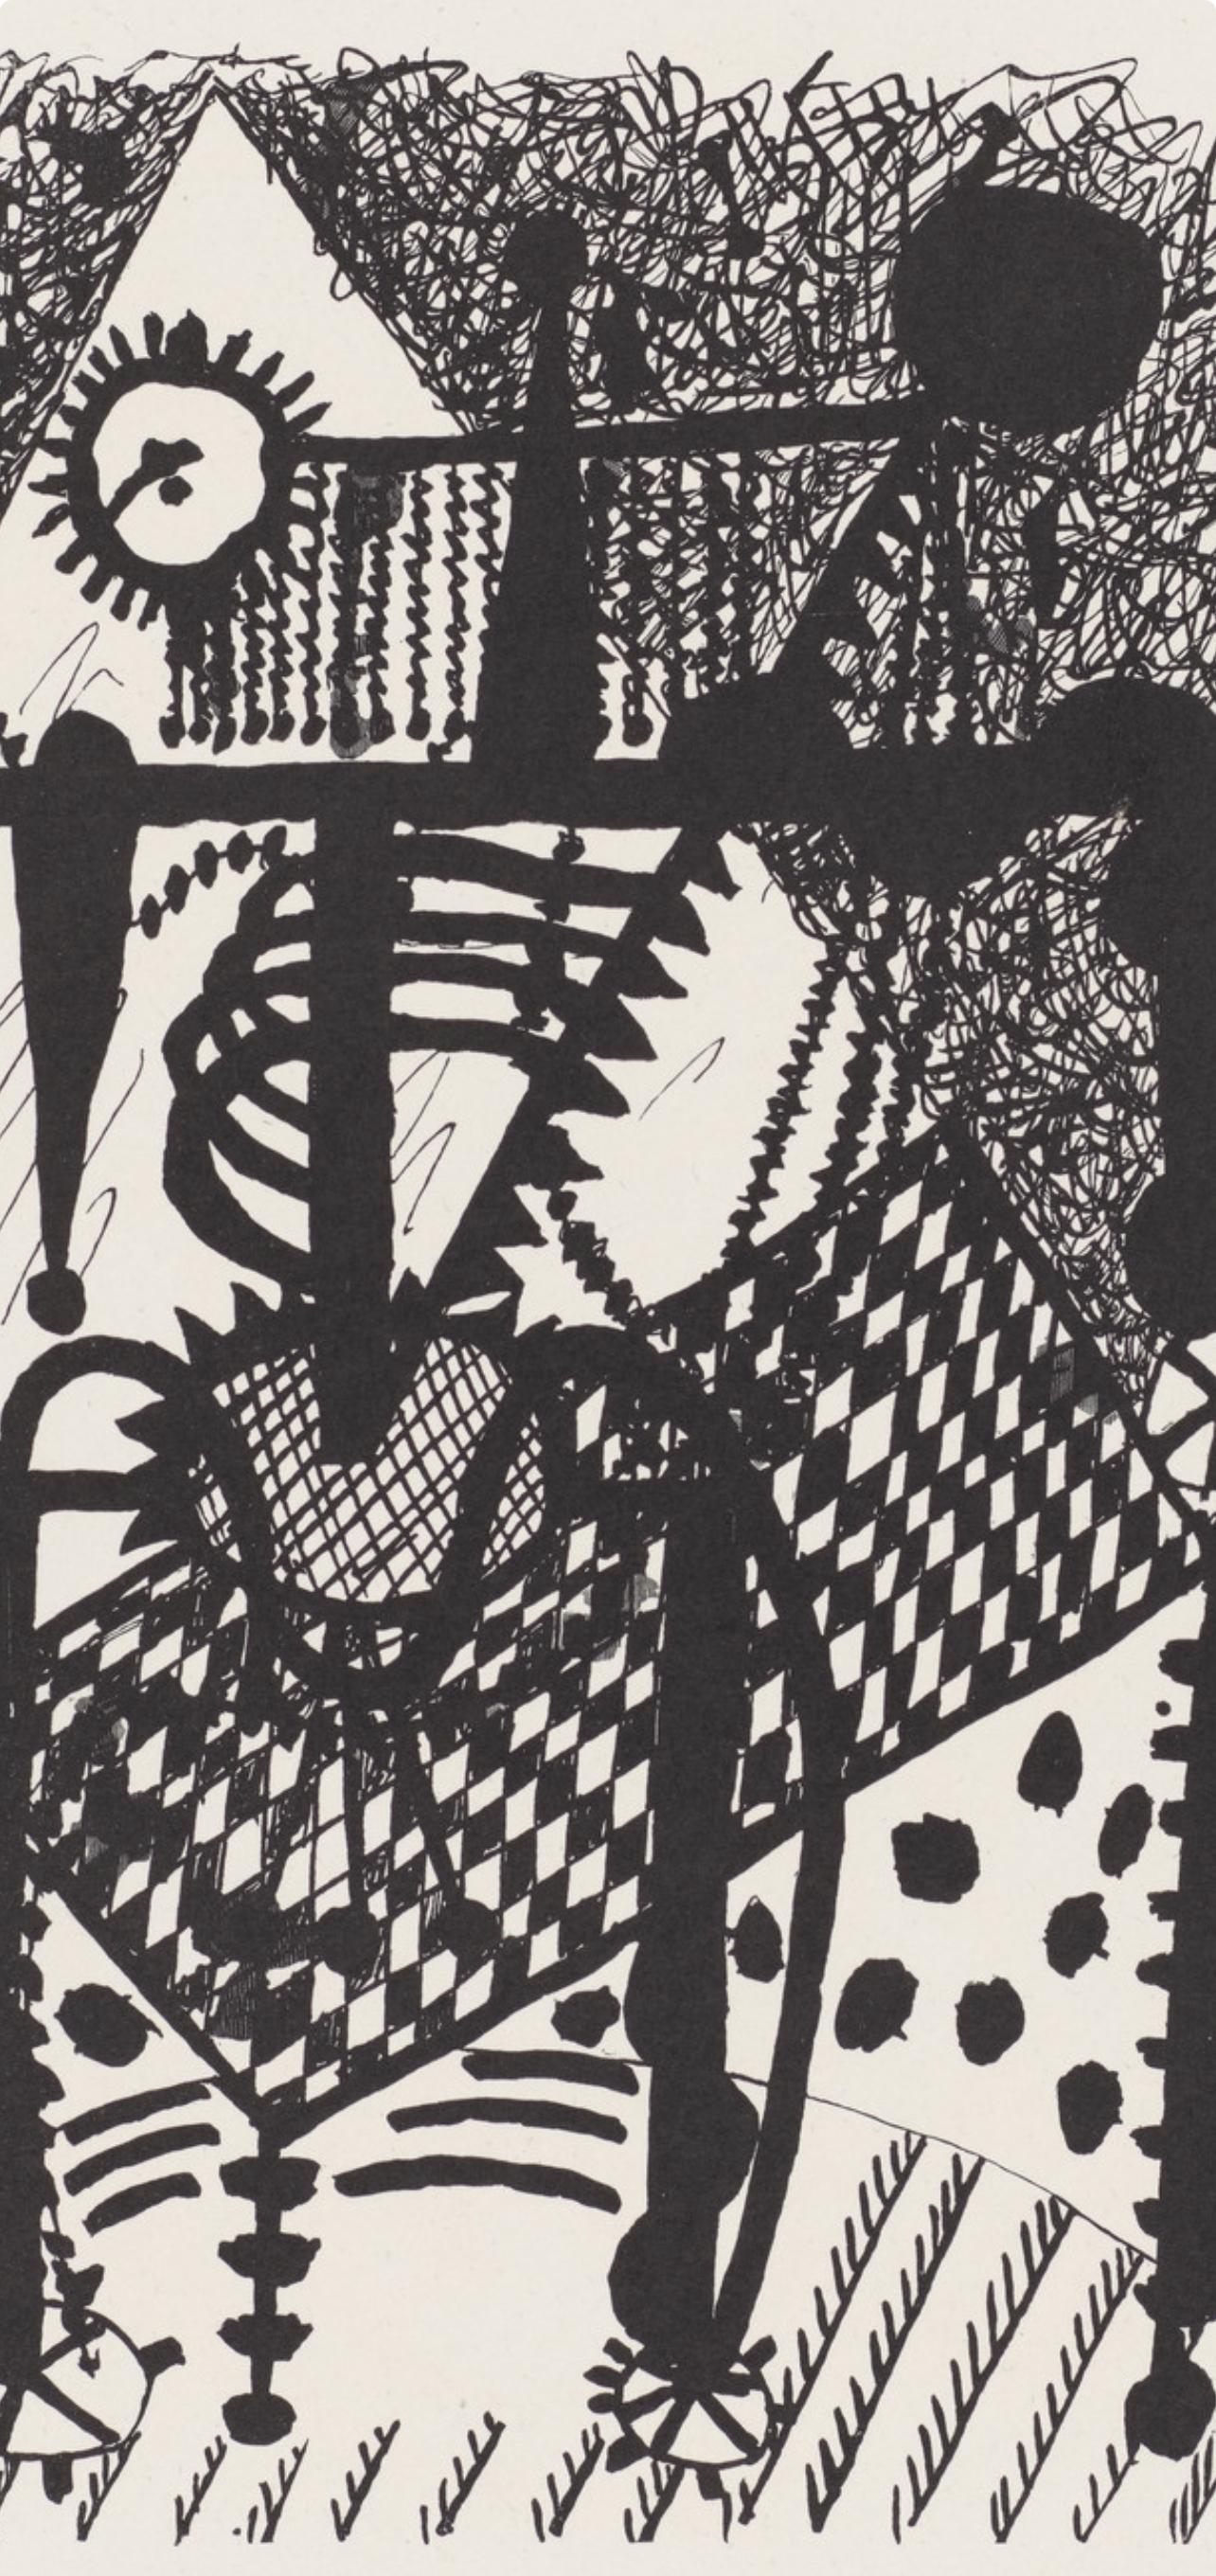 Picasso, Composition (Johnson, Vollard 193), Hélène chez Archimède (after) - Modern Print by Pablo Picasso